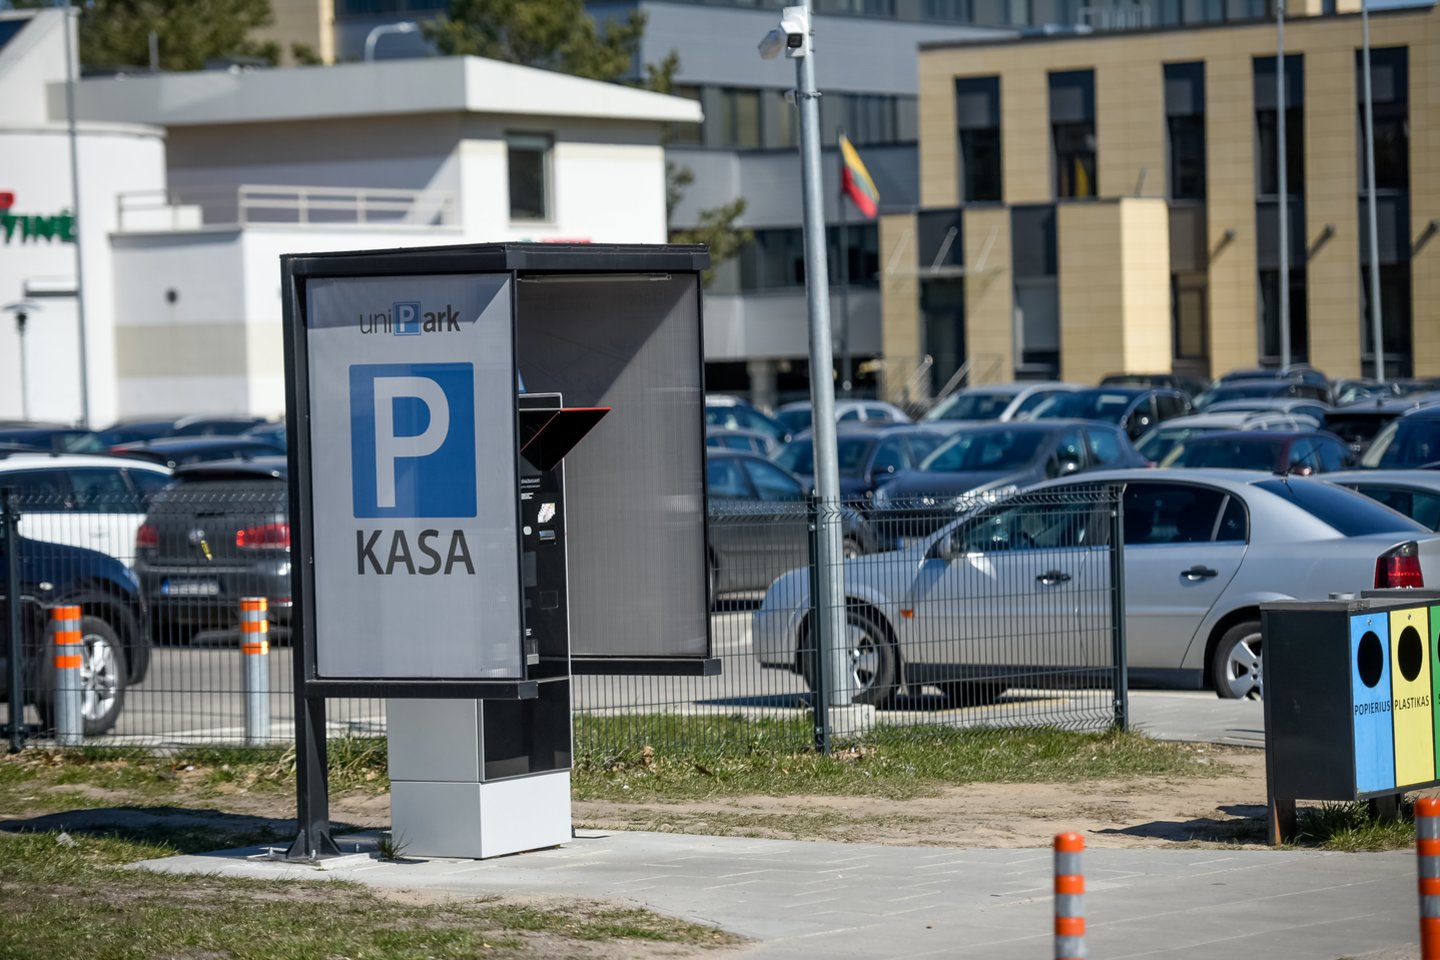 Nuo sausio 16 d. Vilniuje įsigalioja automobilių parkavimo pokyčiai – naujai apmokestinamos automobilių stovėjimo vietos.<br>D.Umbraso nuotr.